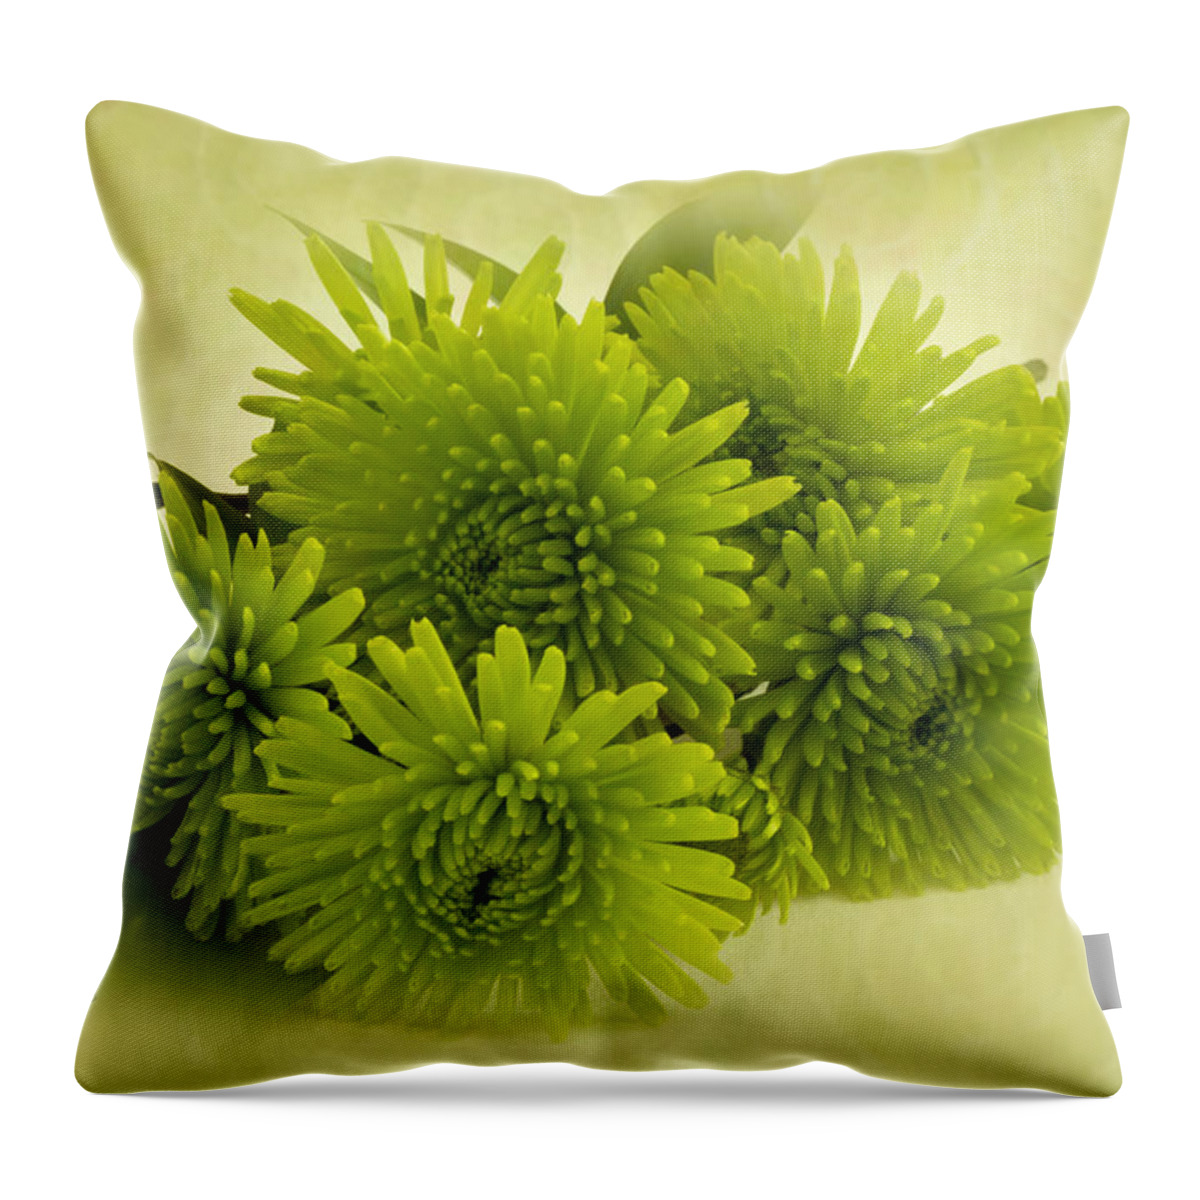 Green Spider Chrysanthemums Throw Pillow featuring the photograph Green Spider Chrysanthemums by Sandra Foster